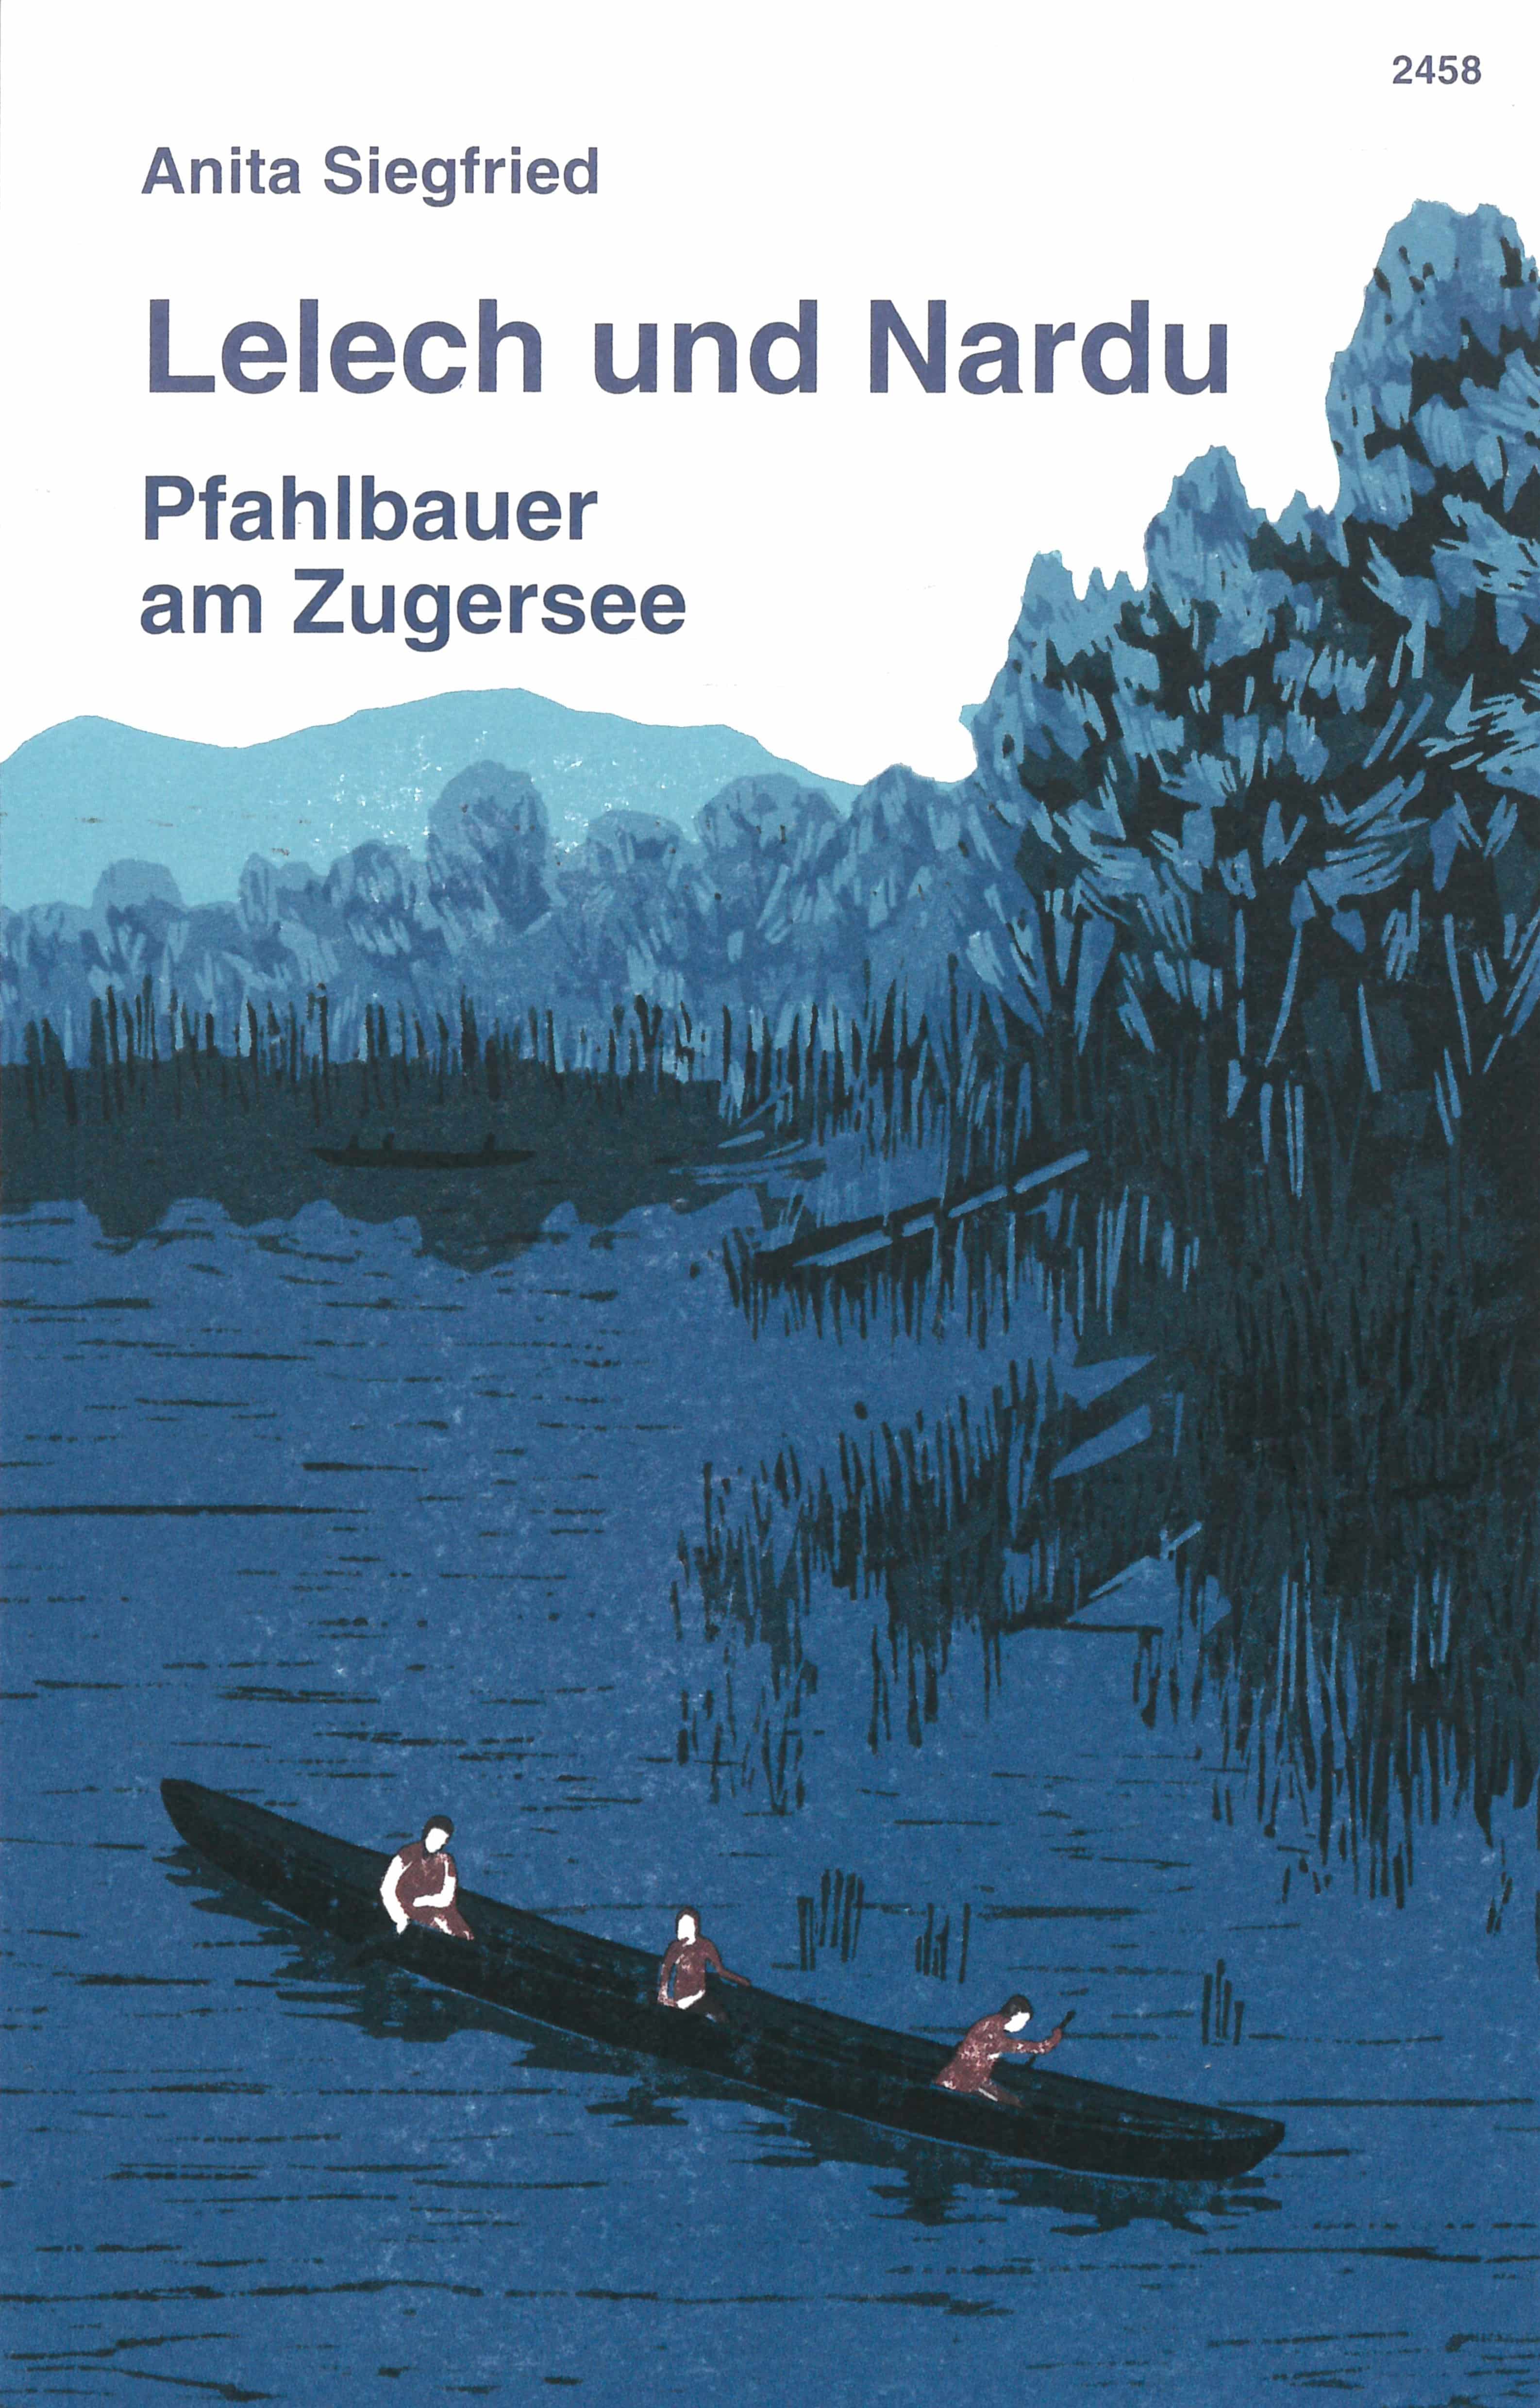 Lelech und Nardu. Pfahlbauer am Zugersee, ein Buch von Anita Siegfried, Illustration von Laura Jurt, SJW Verlag, Schweiz